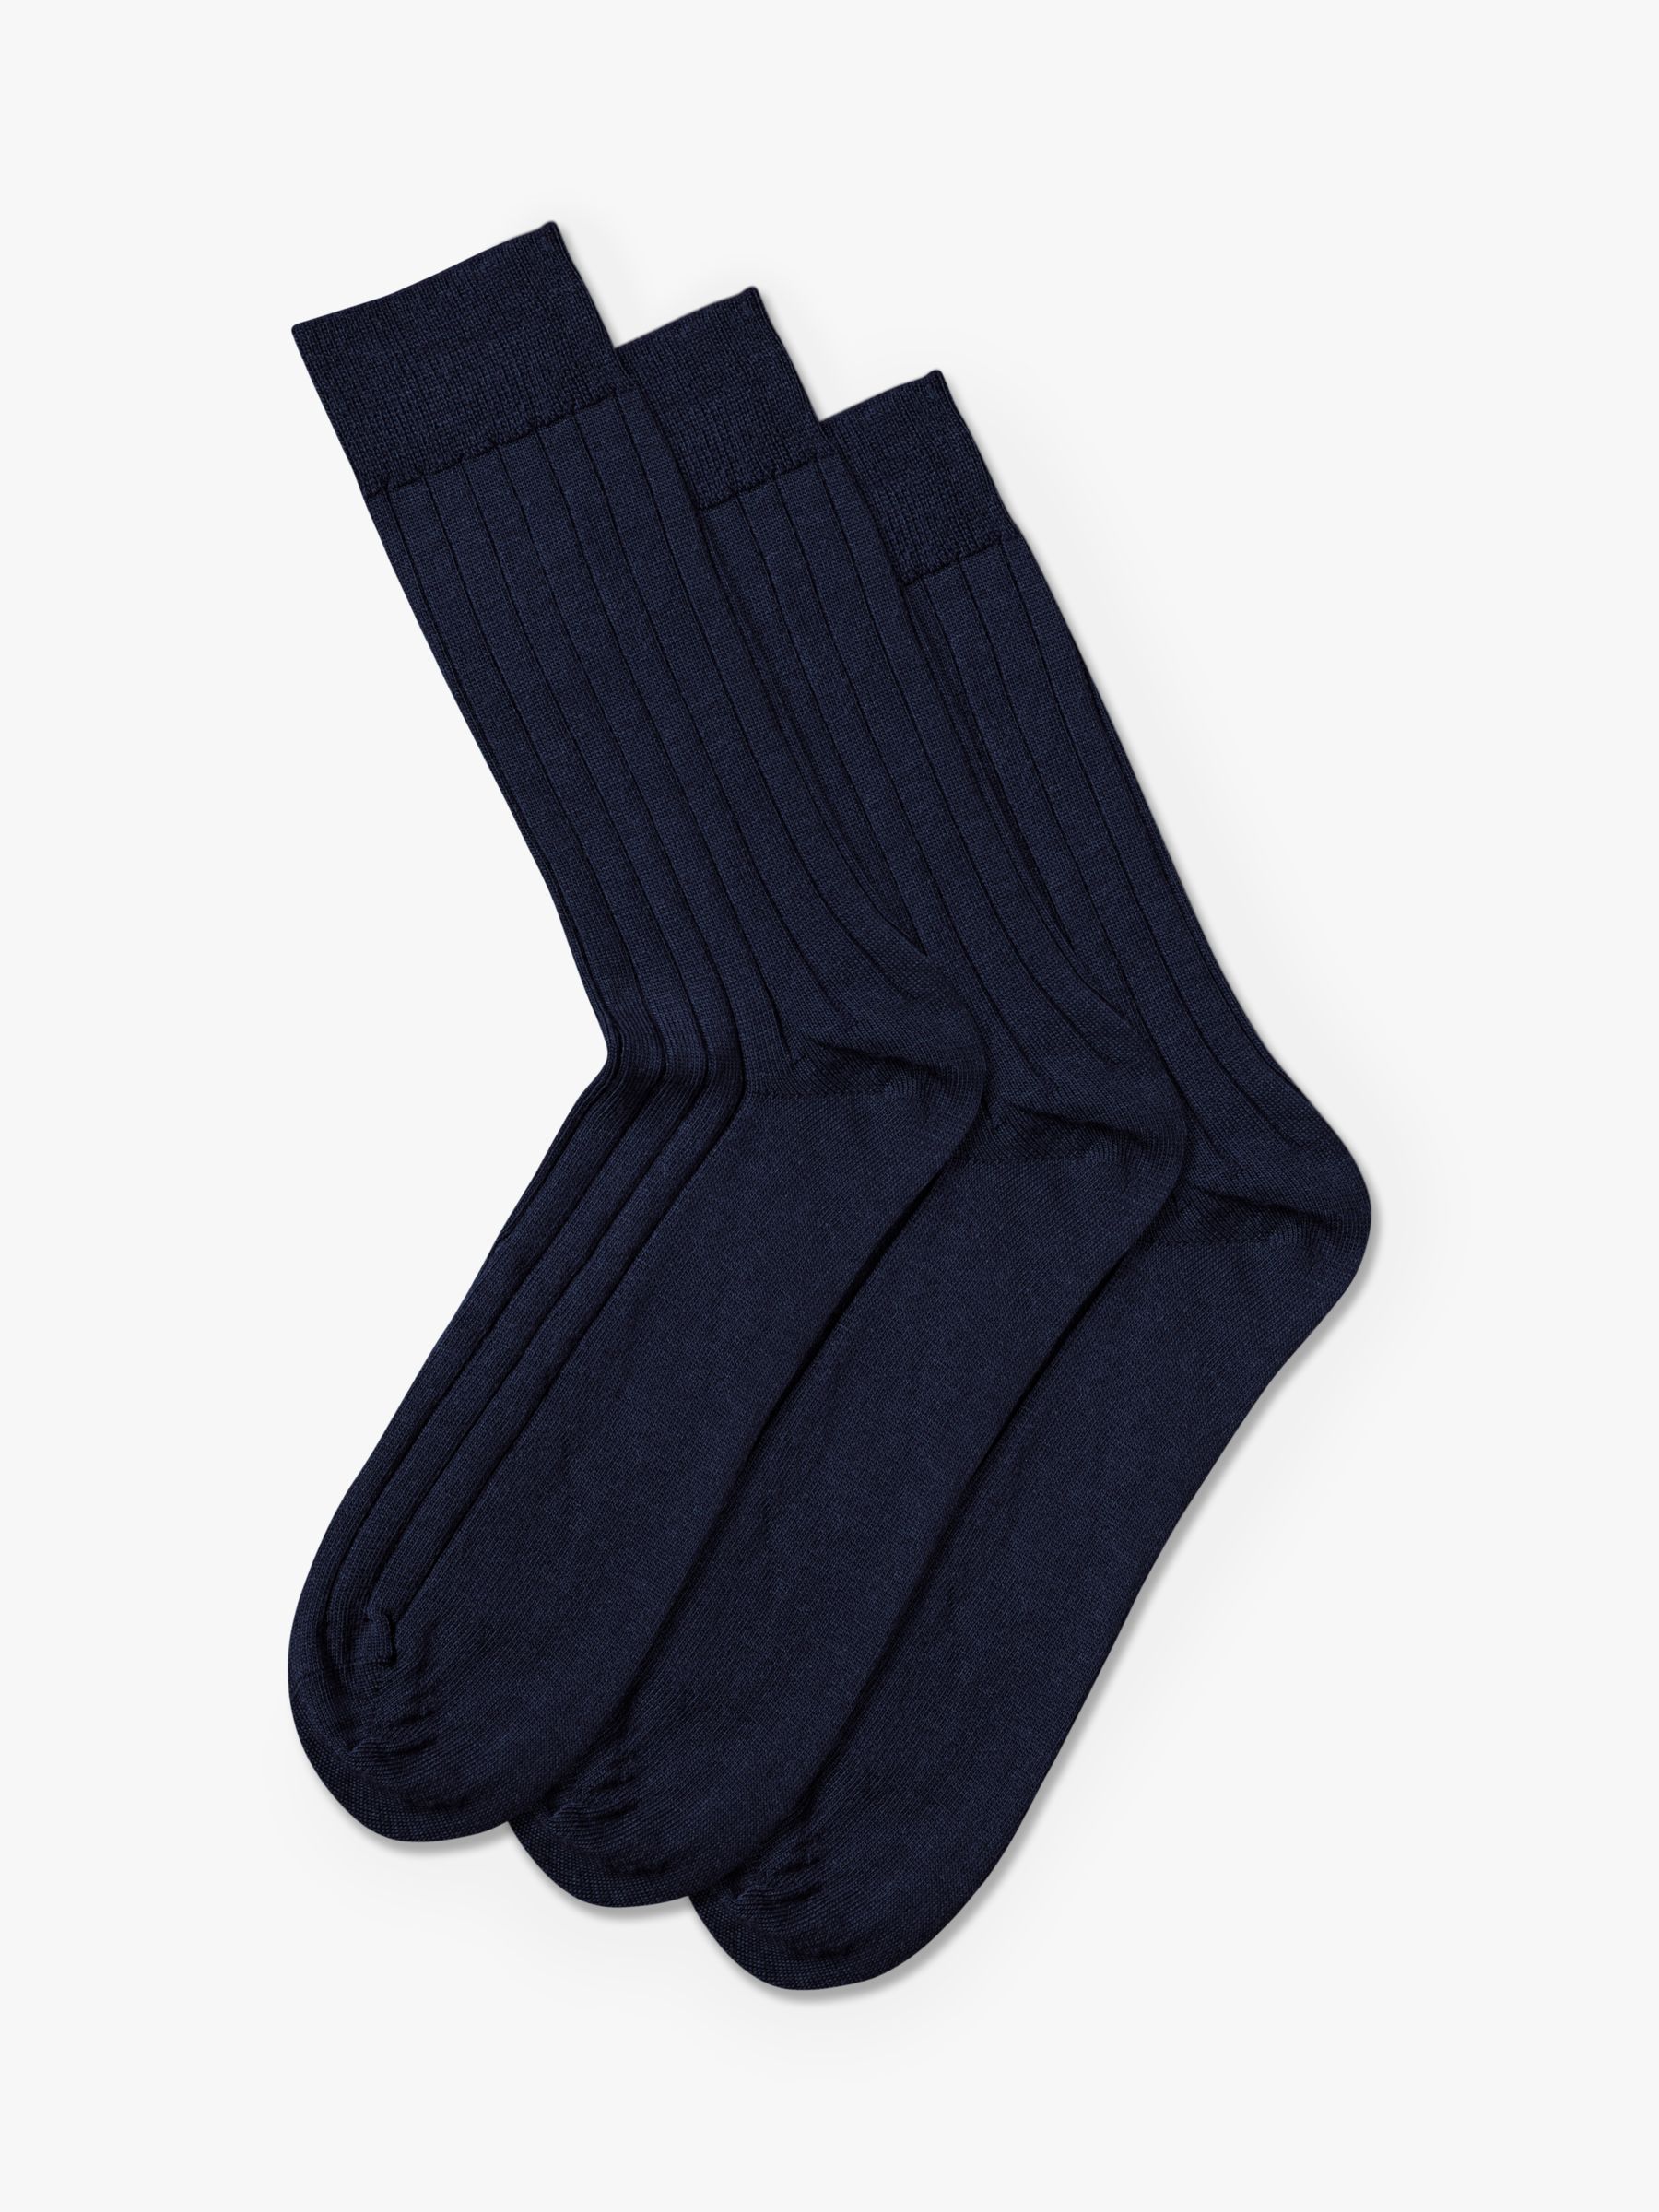 Charles Tyrwhitt Wool Rich Socks, Pack of 3, Denim Blue at John Lewis ...